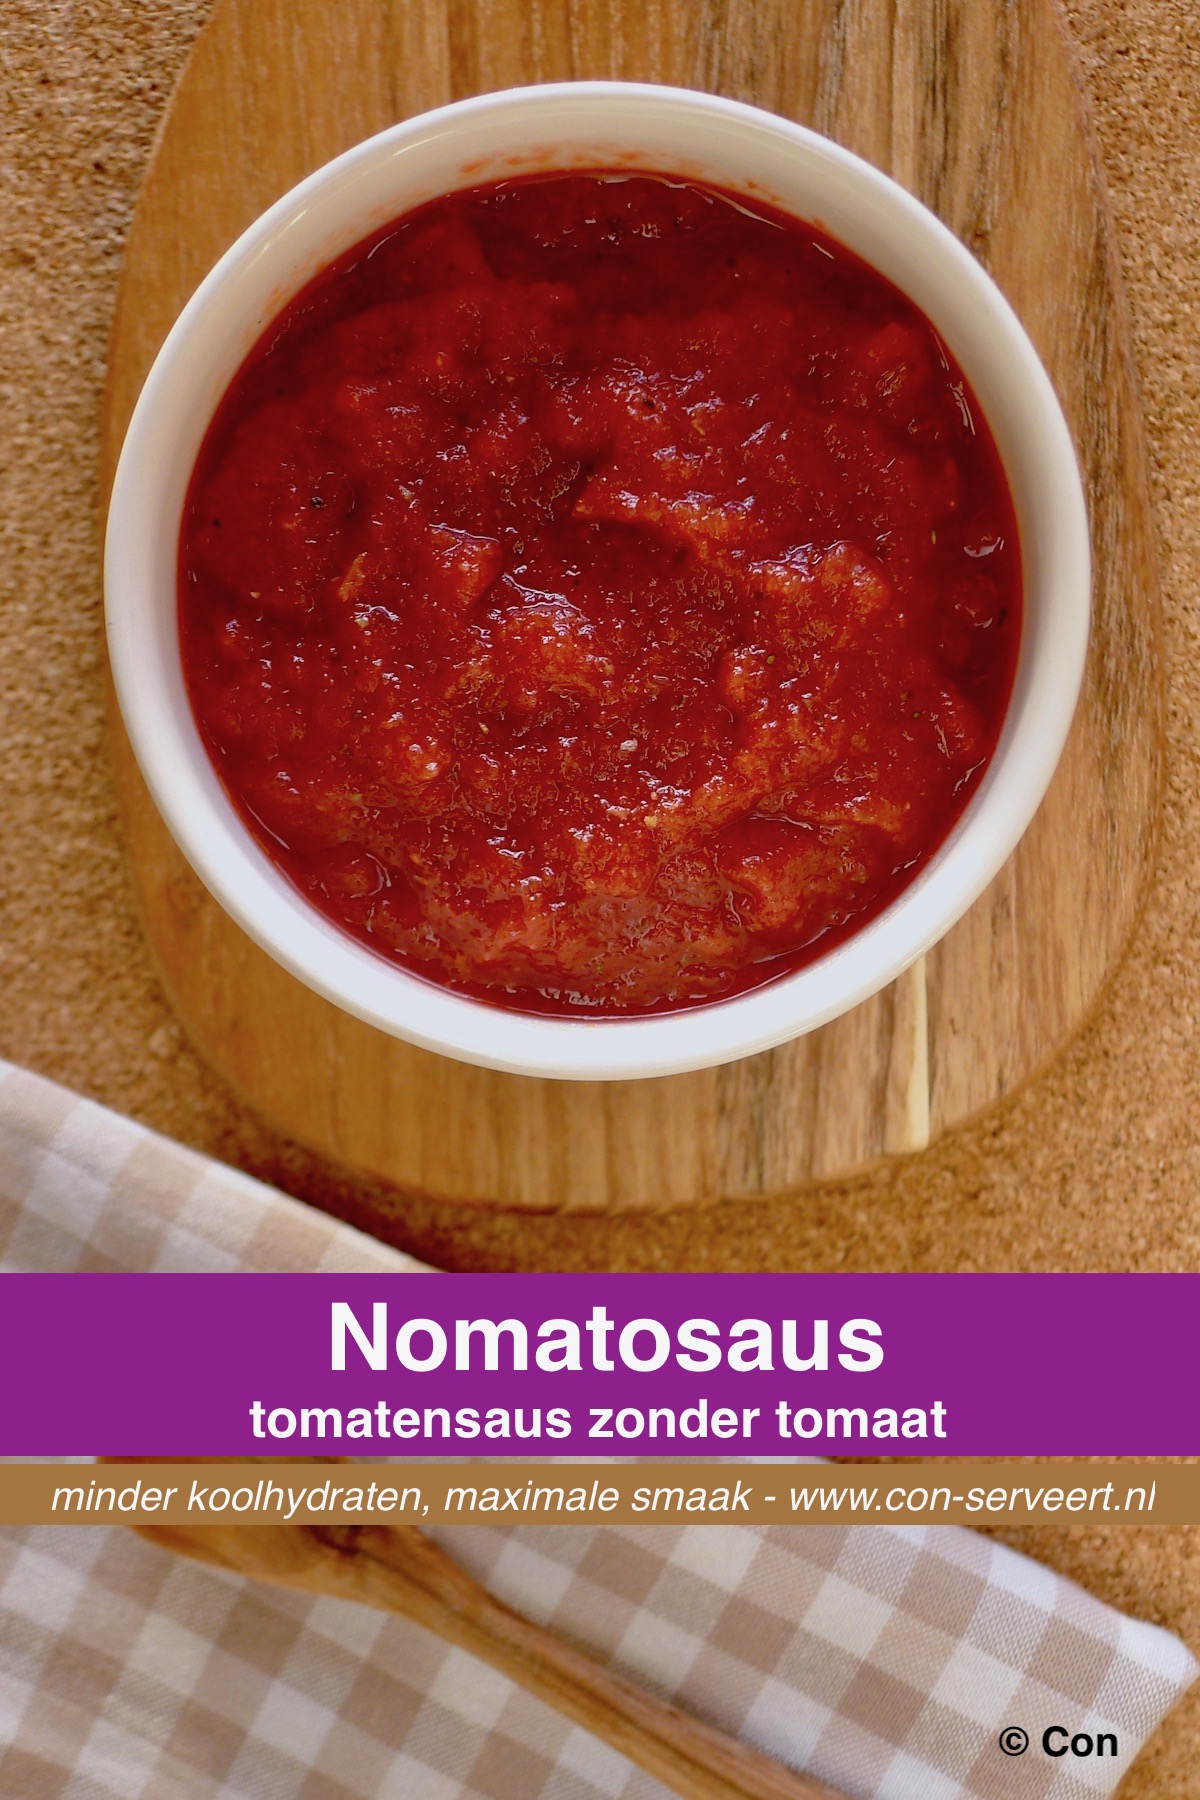 Nomatosaus - tomatensaus zonder tomaat recept ~ minder koolhydraten, maximale smaak ~ www.con-serveert.nl